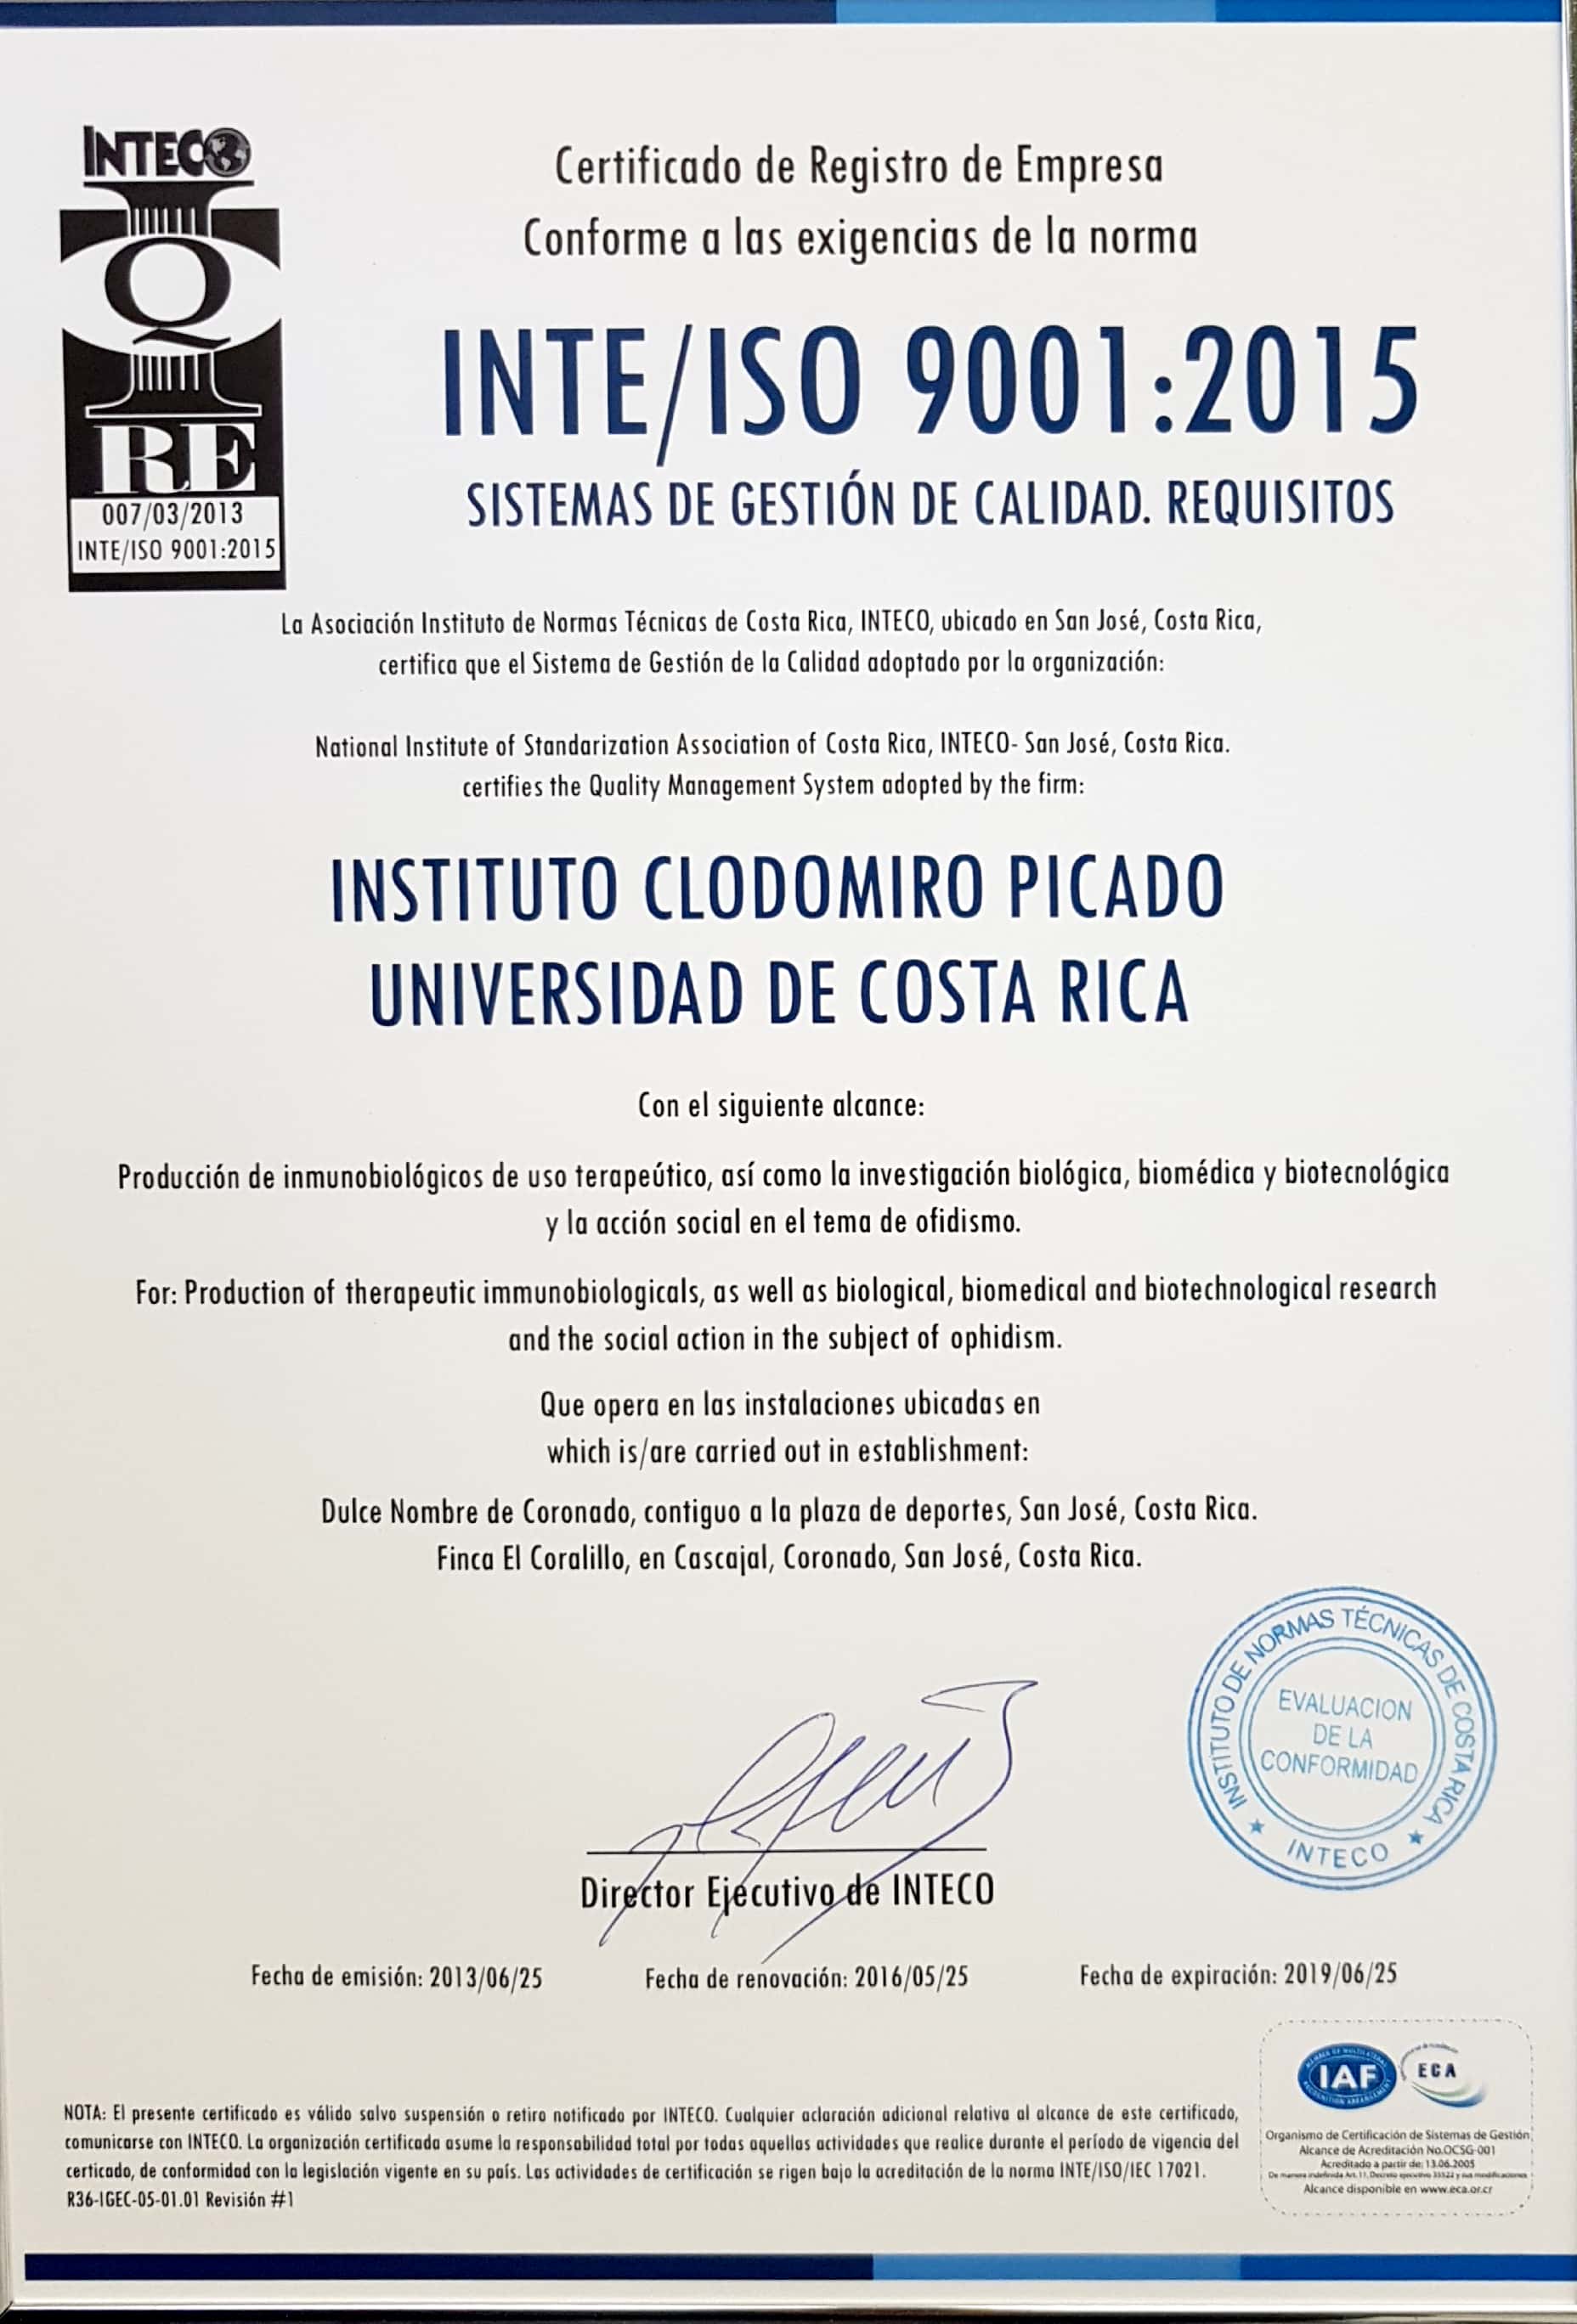 Certificado contra la norma INTE/ISO 9001:2015 